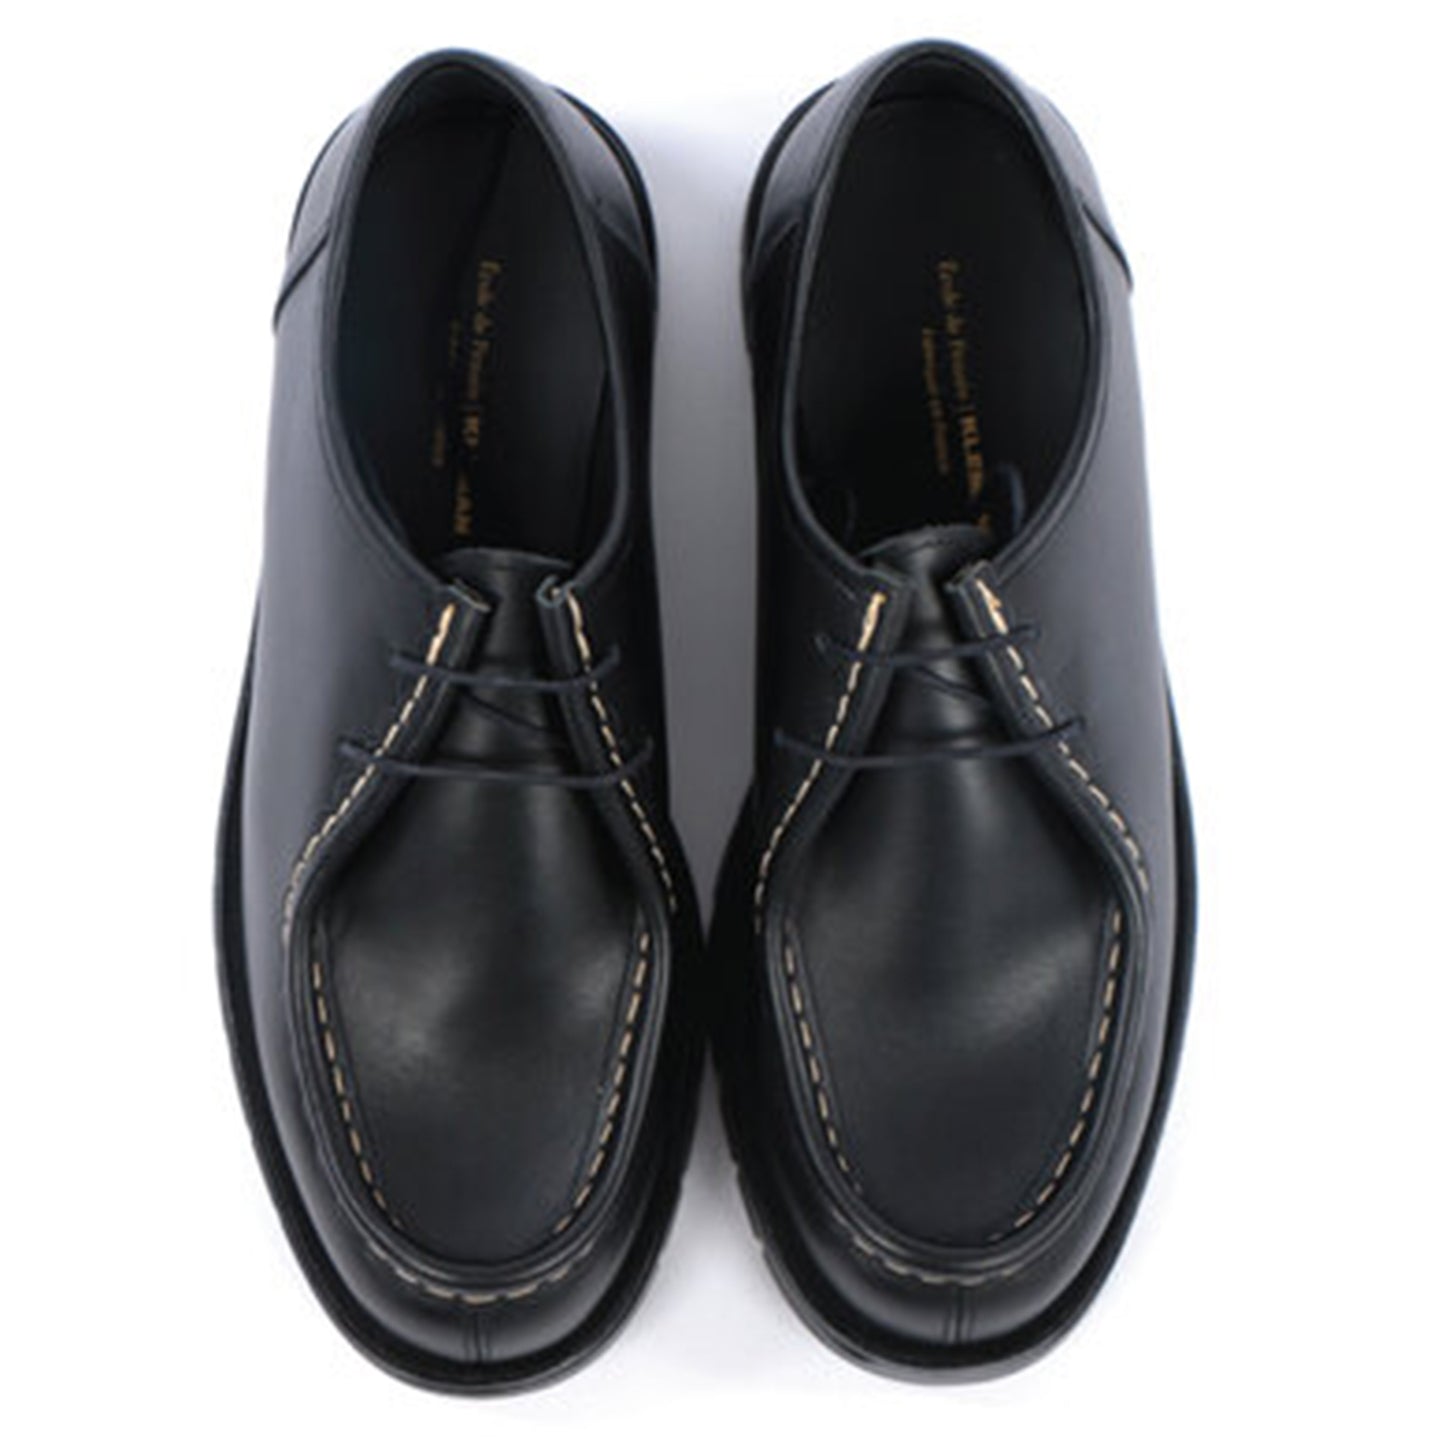 Kleman x Ecole de Pensée Dionee Derby Shoe Collaboration Footwear Black Top View